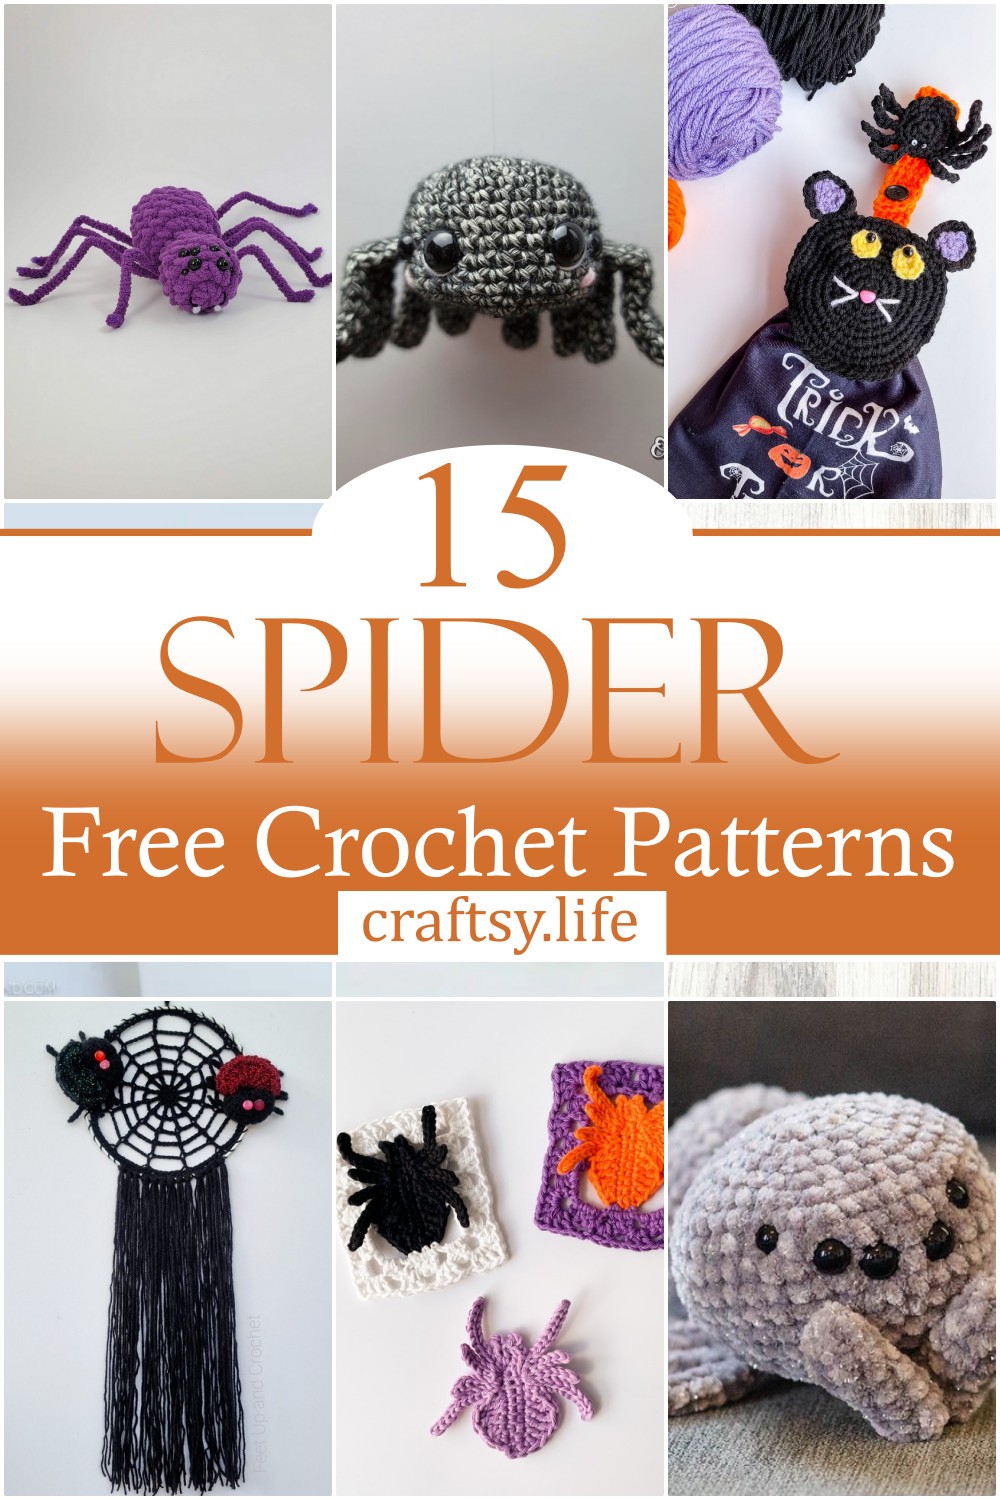 Crochet Spider Free Patterns